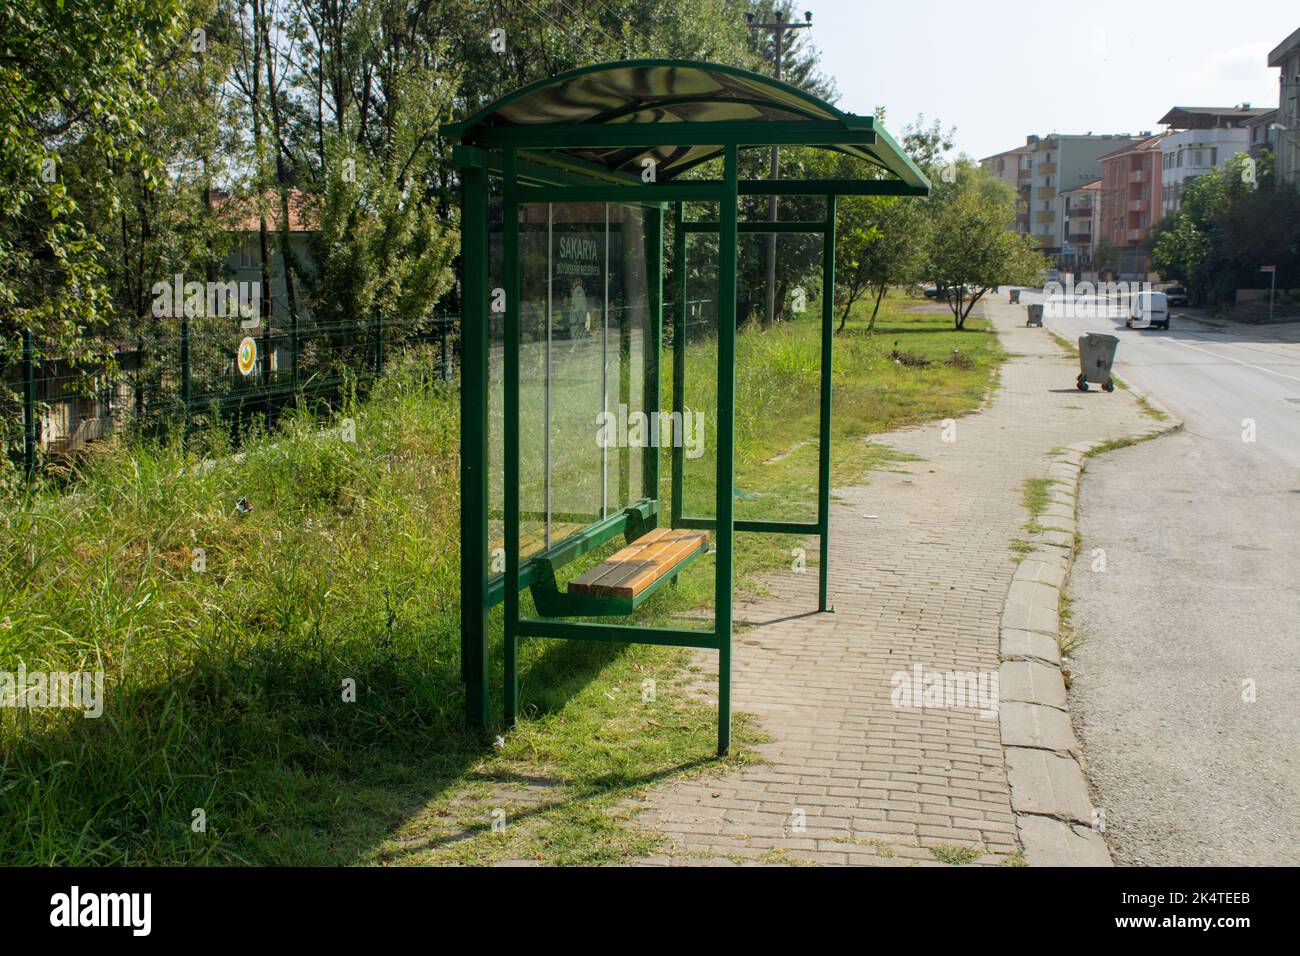 Green bus stop. Sakarya is a city in Turkey. Translation of the stop text: Sakarya metropolitan municipality. Stock Photo